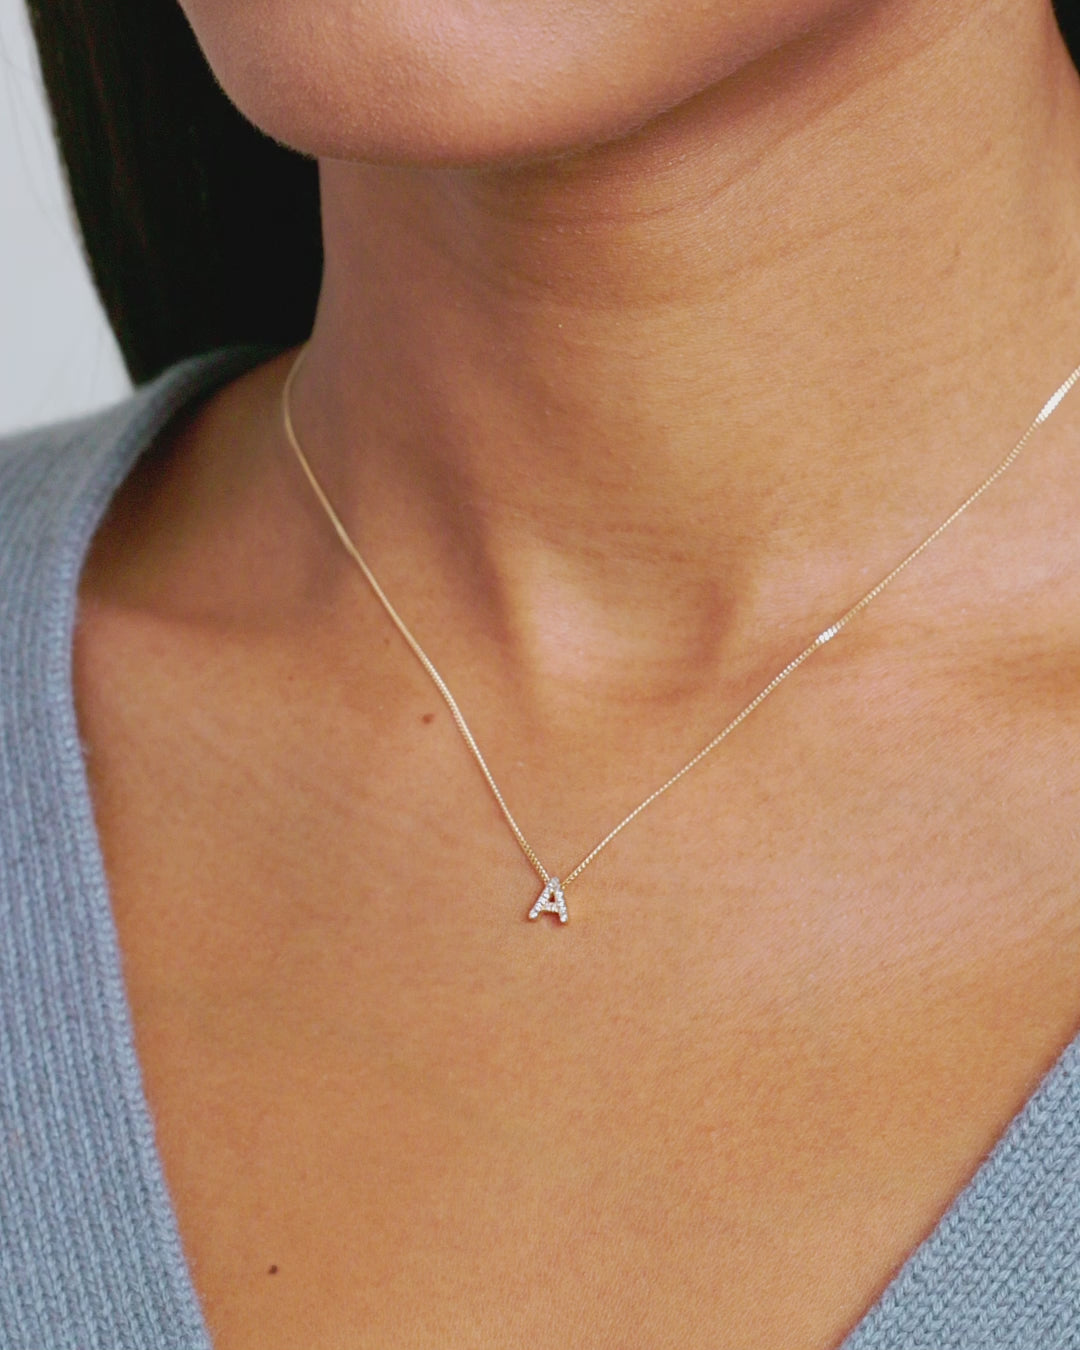 Online Hot Sale Custom 8 Mini Diamond Letter Necklace for Women